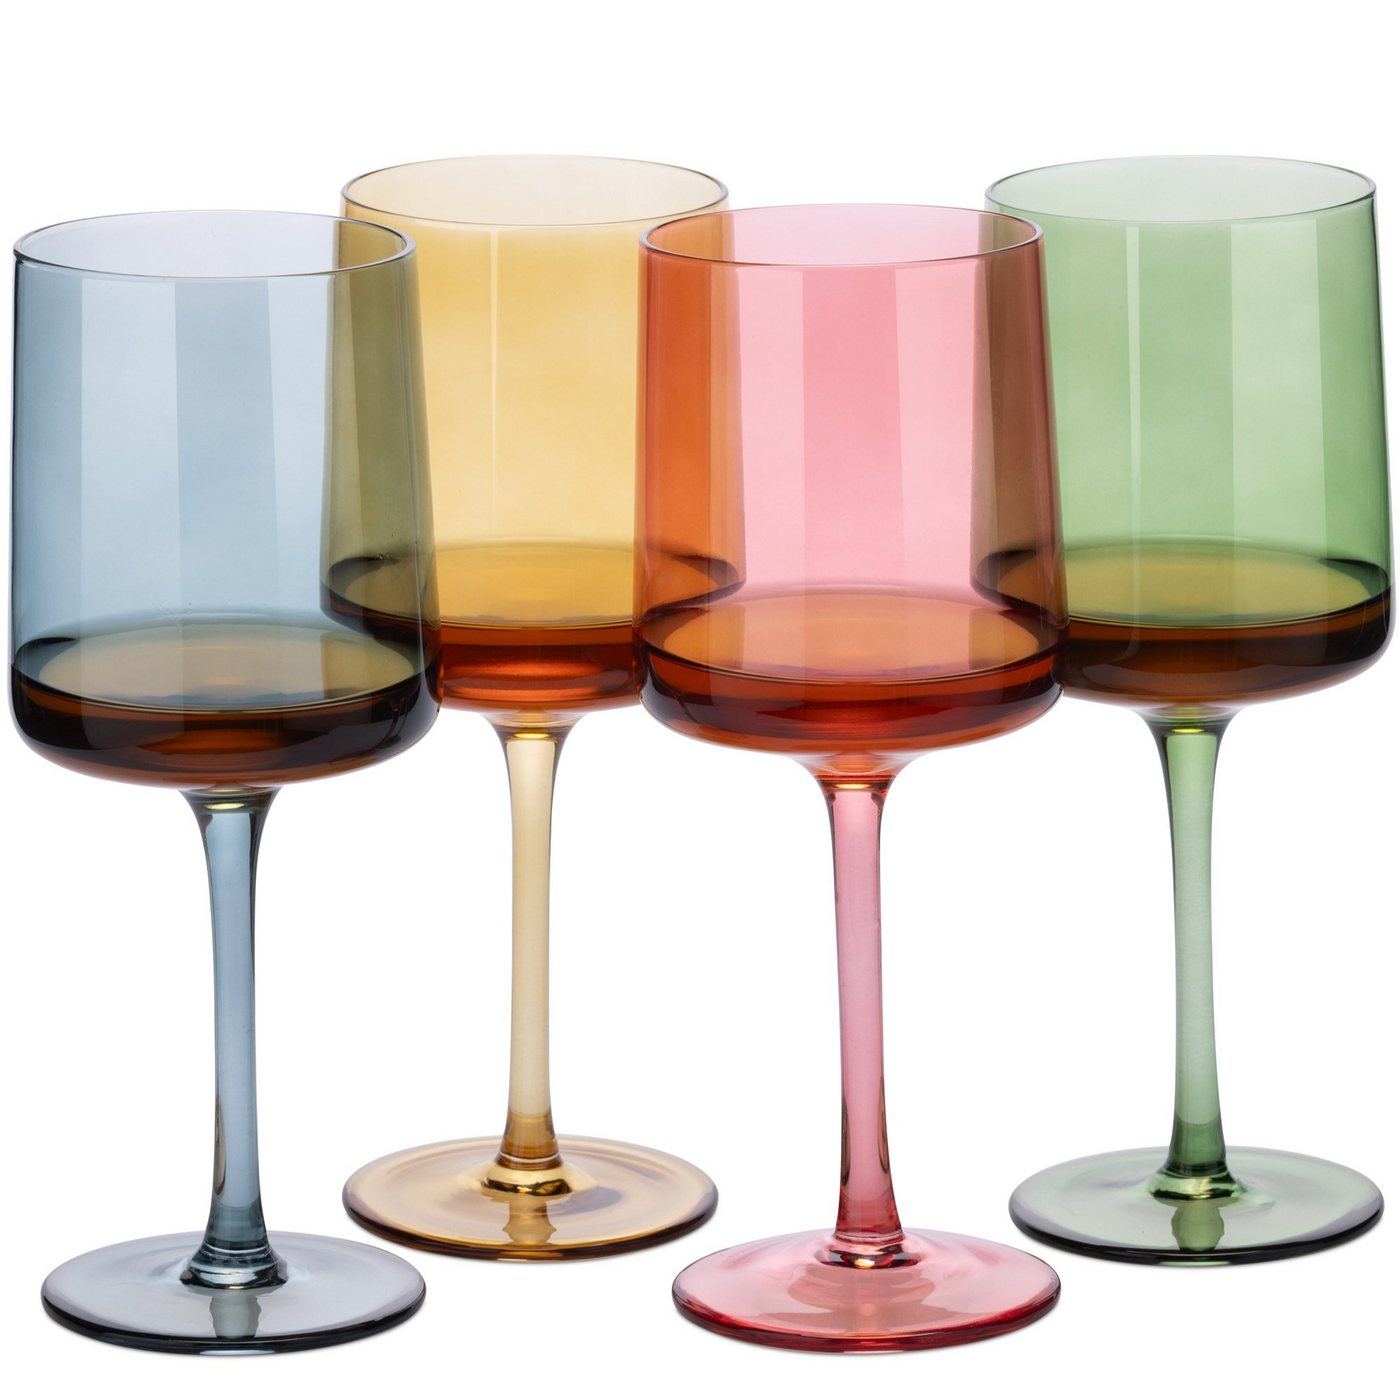 Navaris Weinglas mehrfarbig getönte Weingläser 4er-Set - Farbige Weingläser mit Stiel, Glas von Navaris